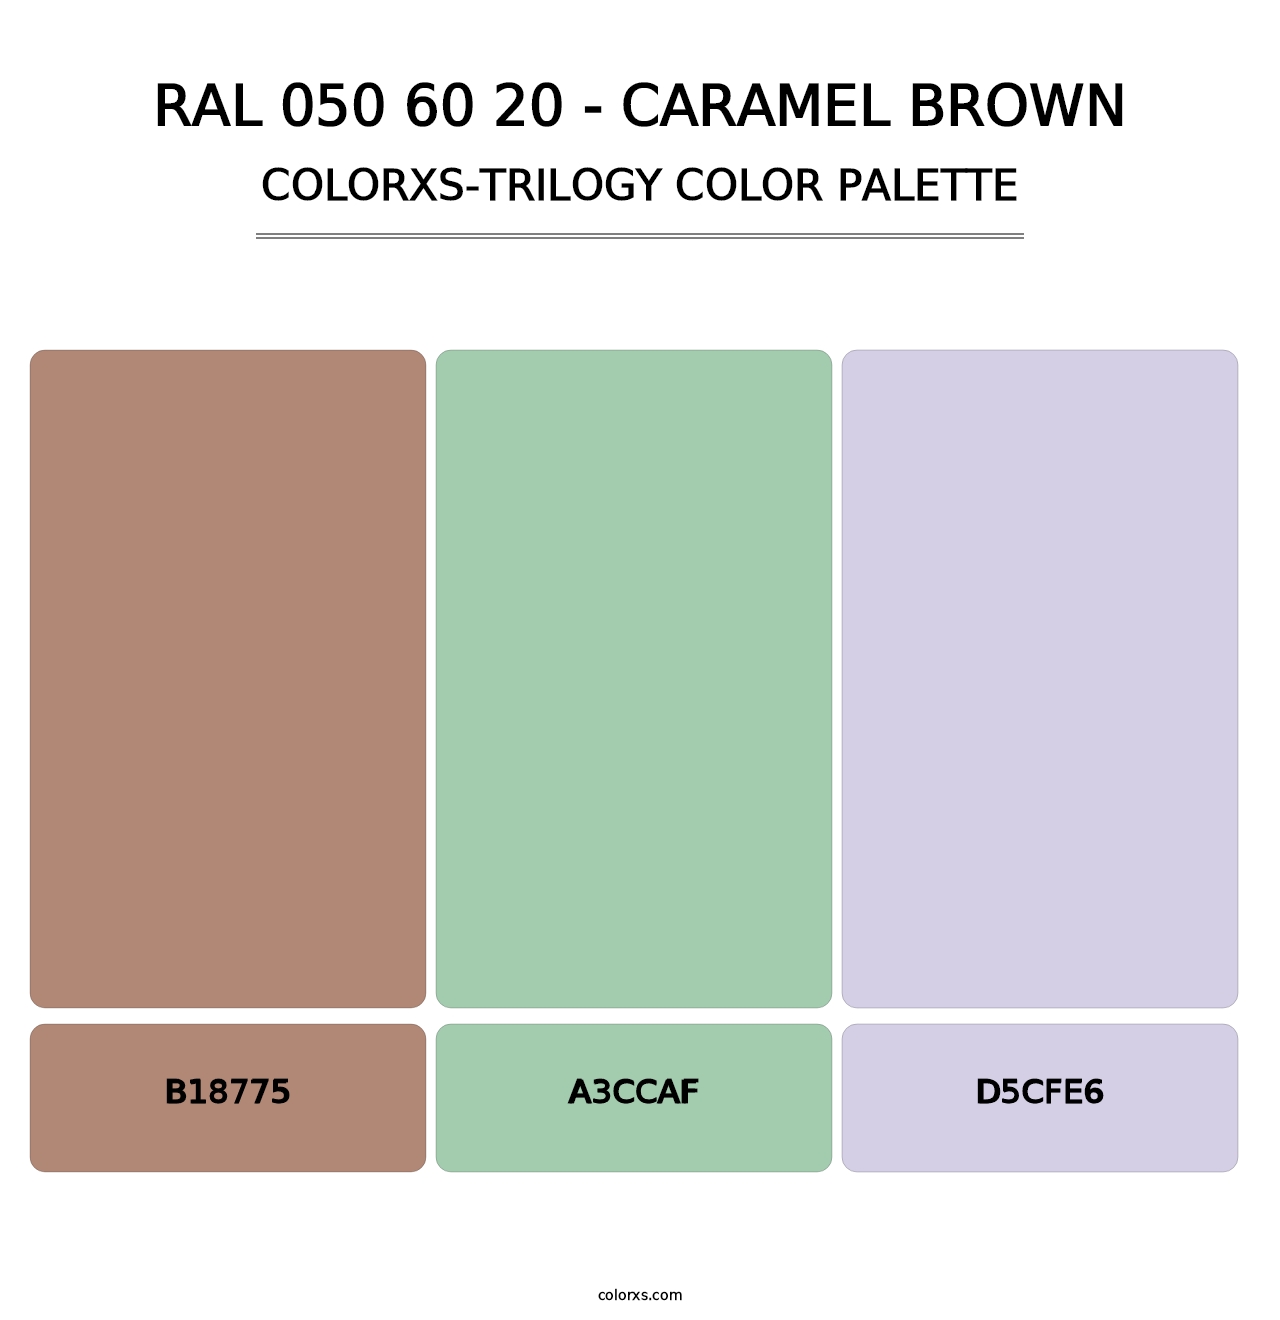 RAL 050 60 20 - Caramel Brown - Colorxs Trilogy Palette